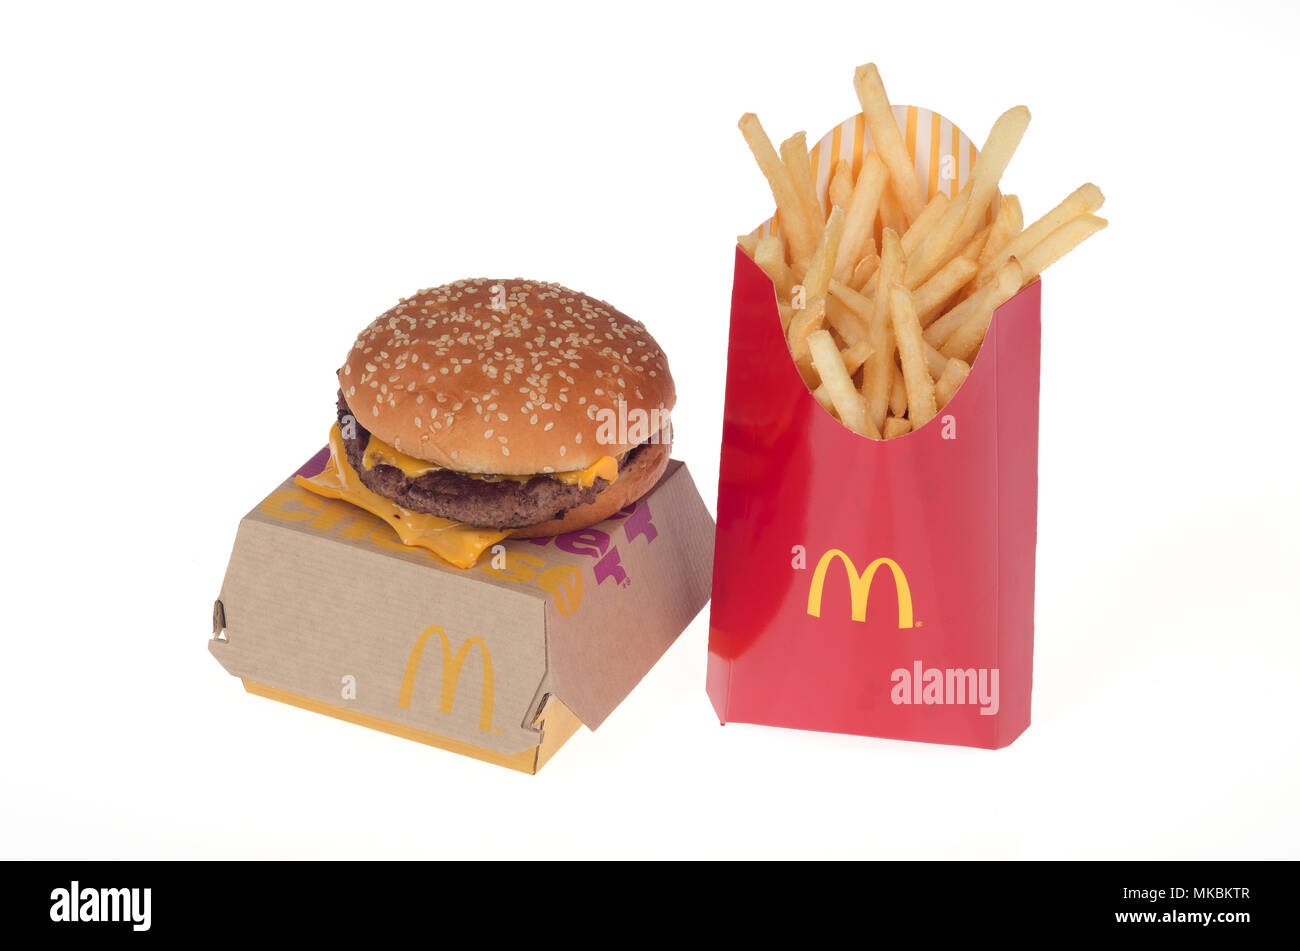 McDonald's nouveau quart de livre de boeuf frais avec du fromage et de grosses frites. Le fresh burger congelé pas lancé à l'échelle nationale aux Etats-Unis en mai 2018. Banque D'Images